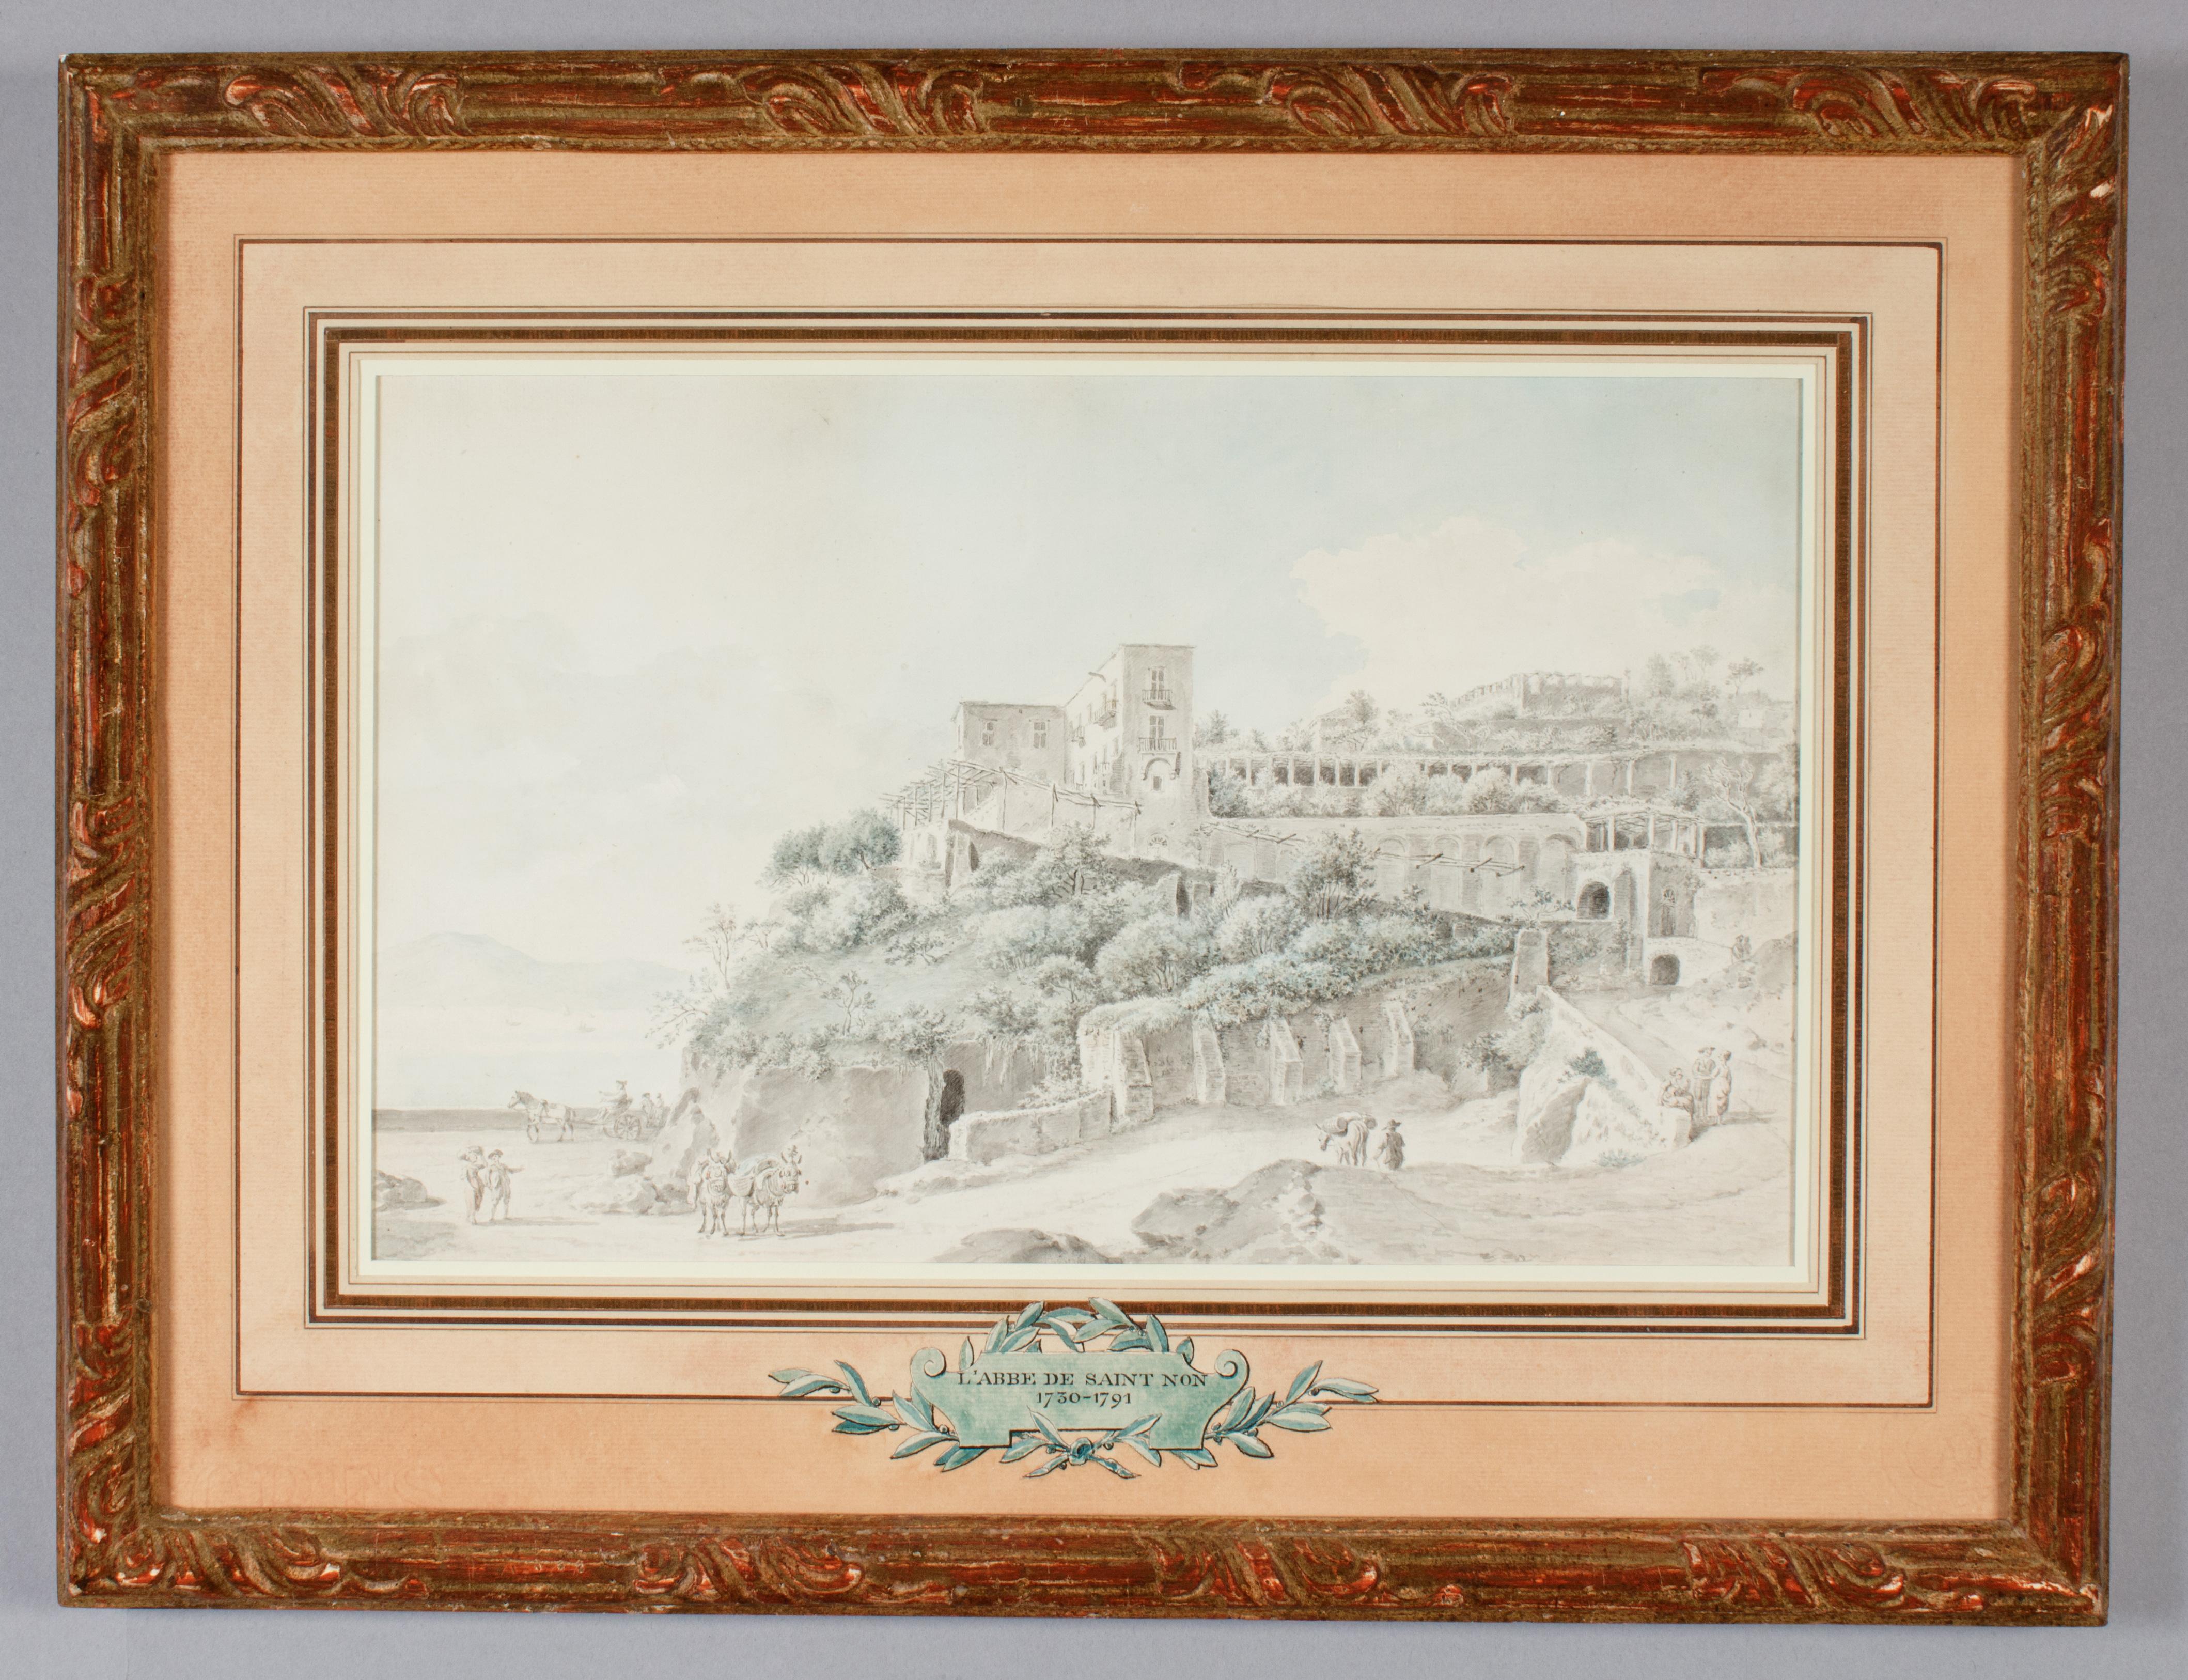 Jean-Claude-Richard de Saint Non Landscape Art – Mount Posillipo in der Nähe des Tombs von Virgil, Neapel, 1779